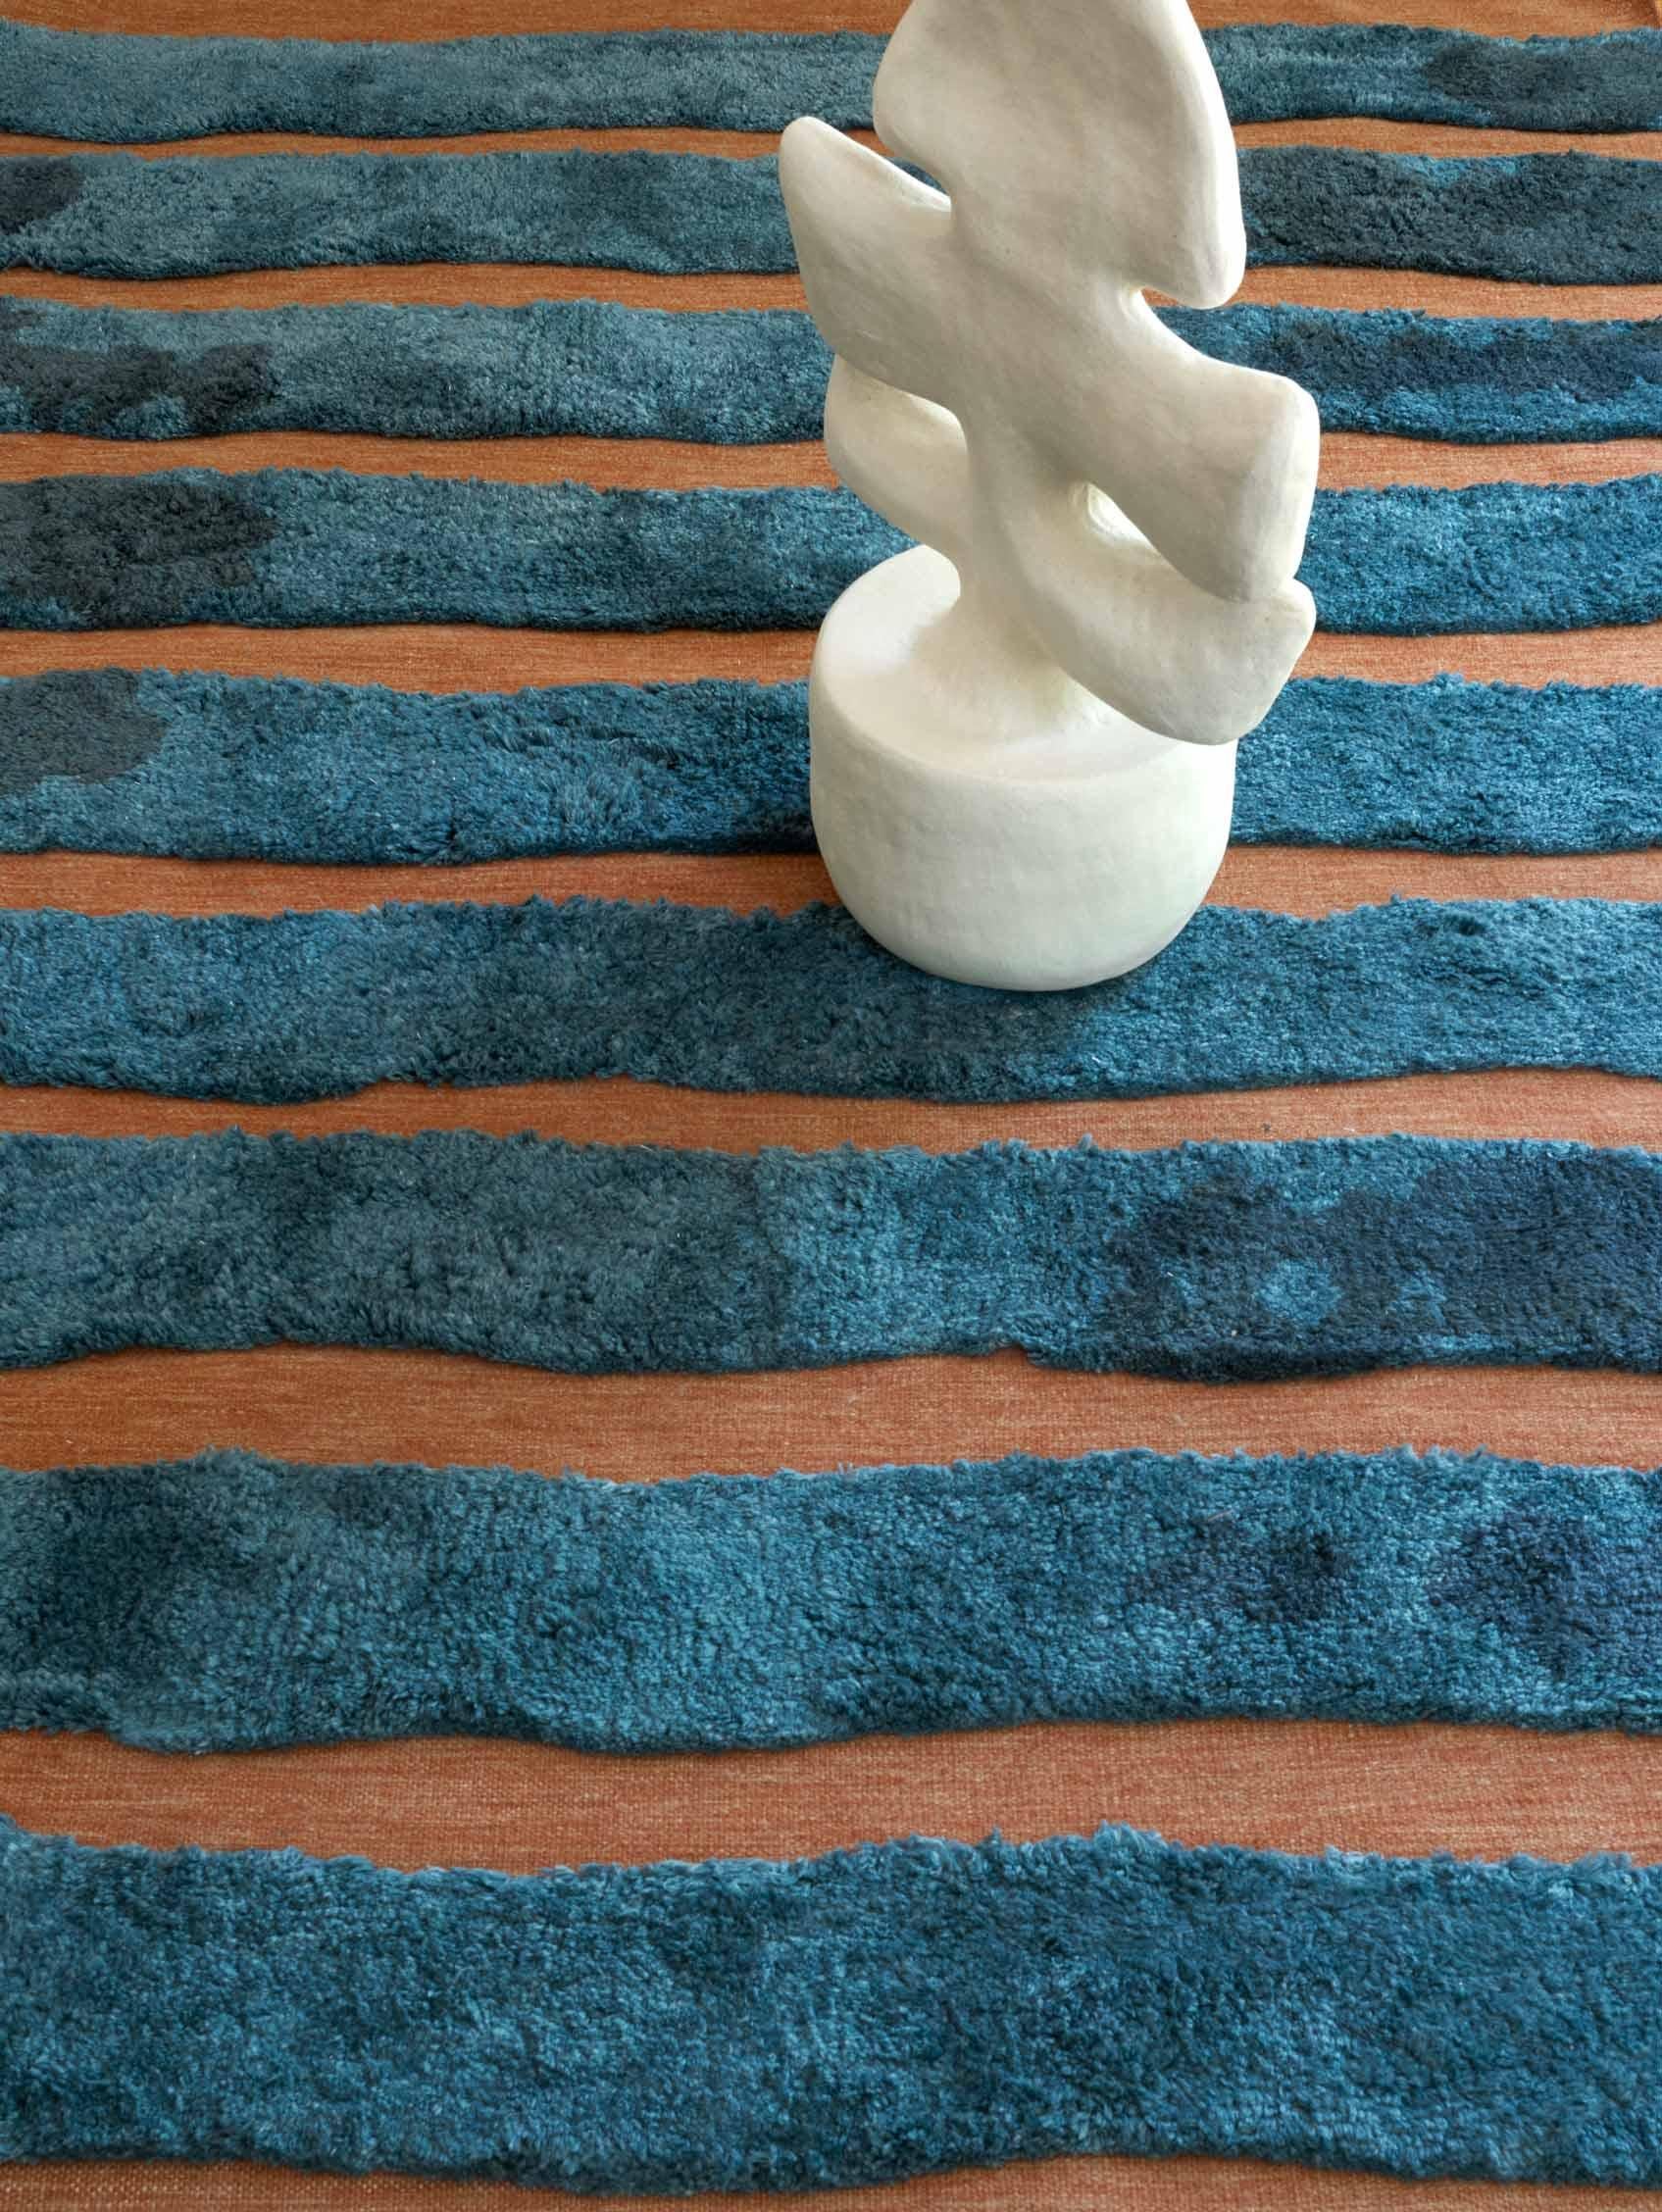 Motif du tapis : Bold Stripe - Isthmus
MATERIAL : Poil de laine mérinos/ Laine de Nouvelle-Zélande tissée à plat
Qualité : Laine tissée à plat et poils marocains, poils de 10 mm, tissés à la main. 
Taille : 5'-0